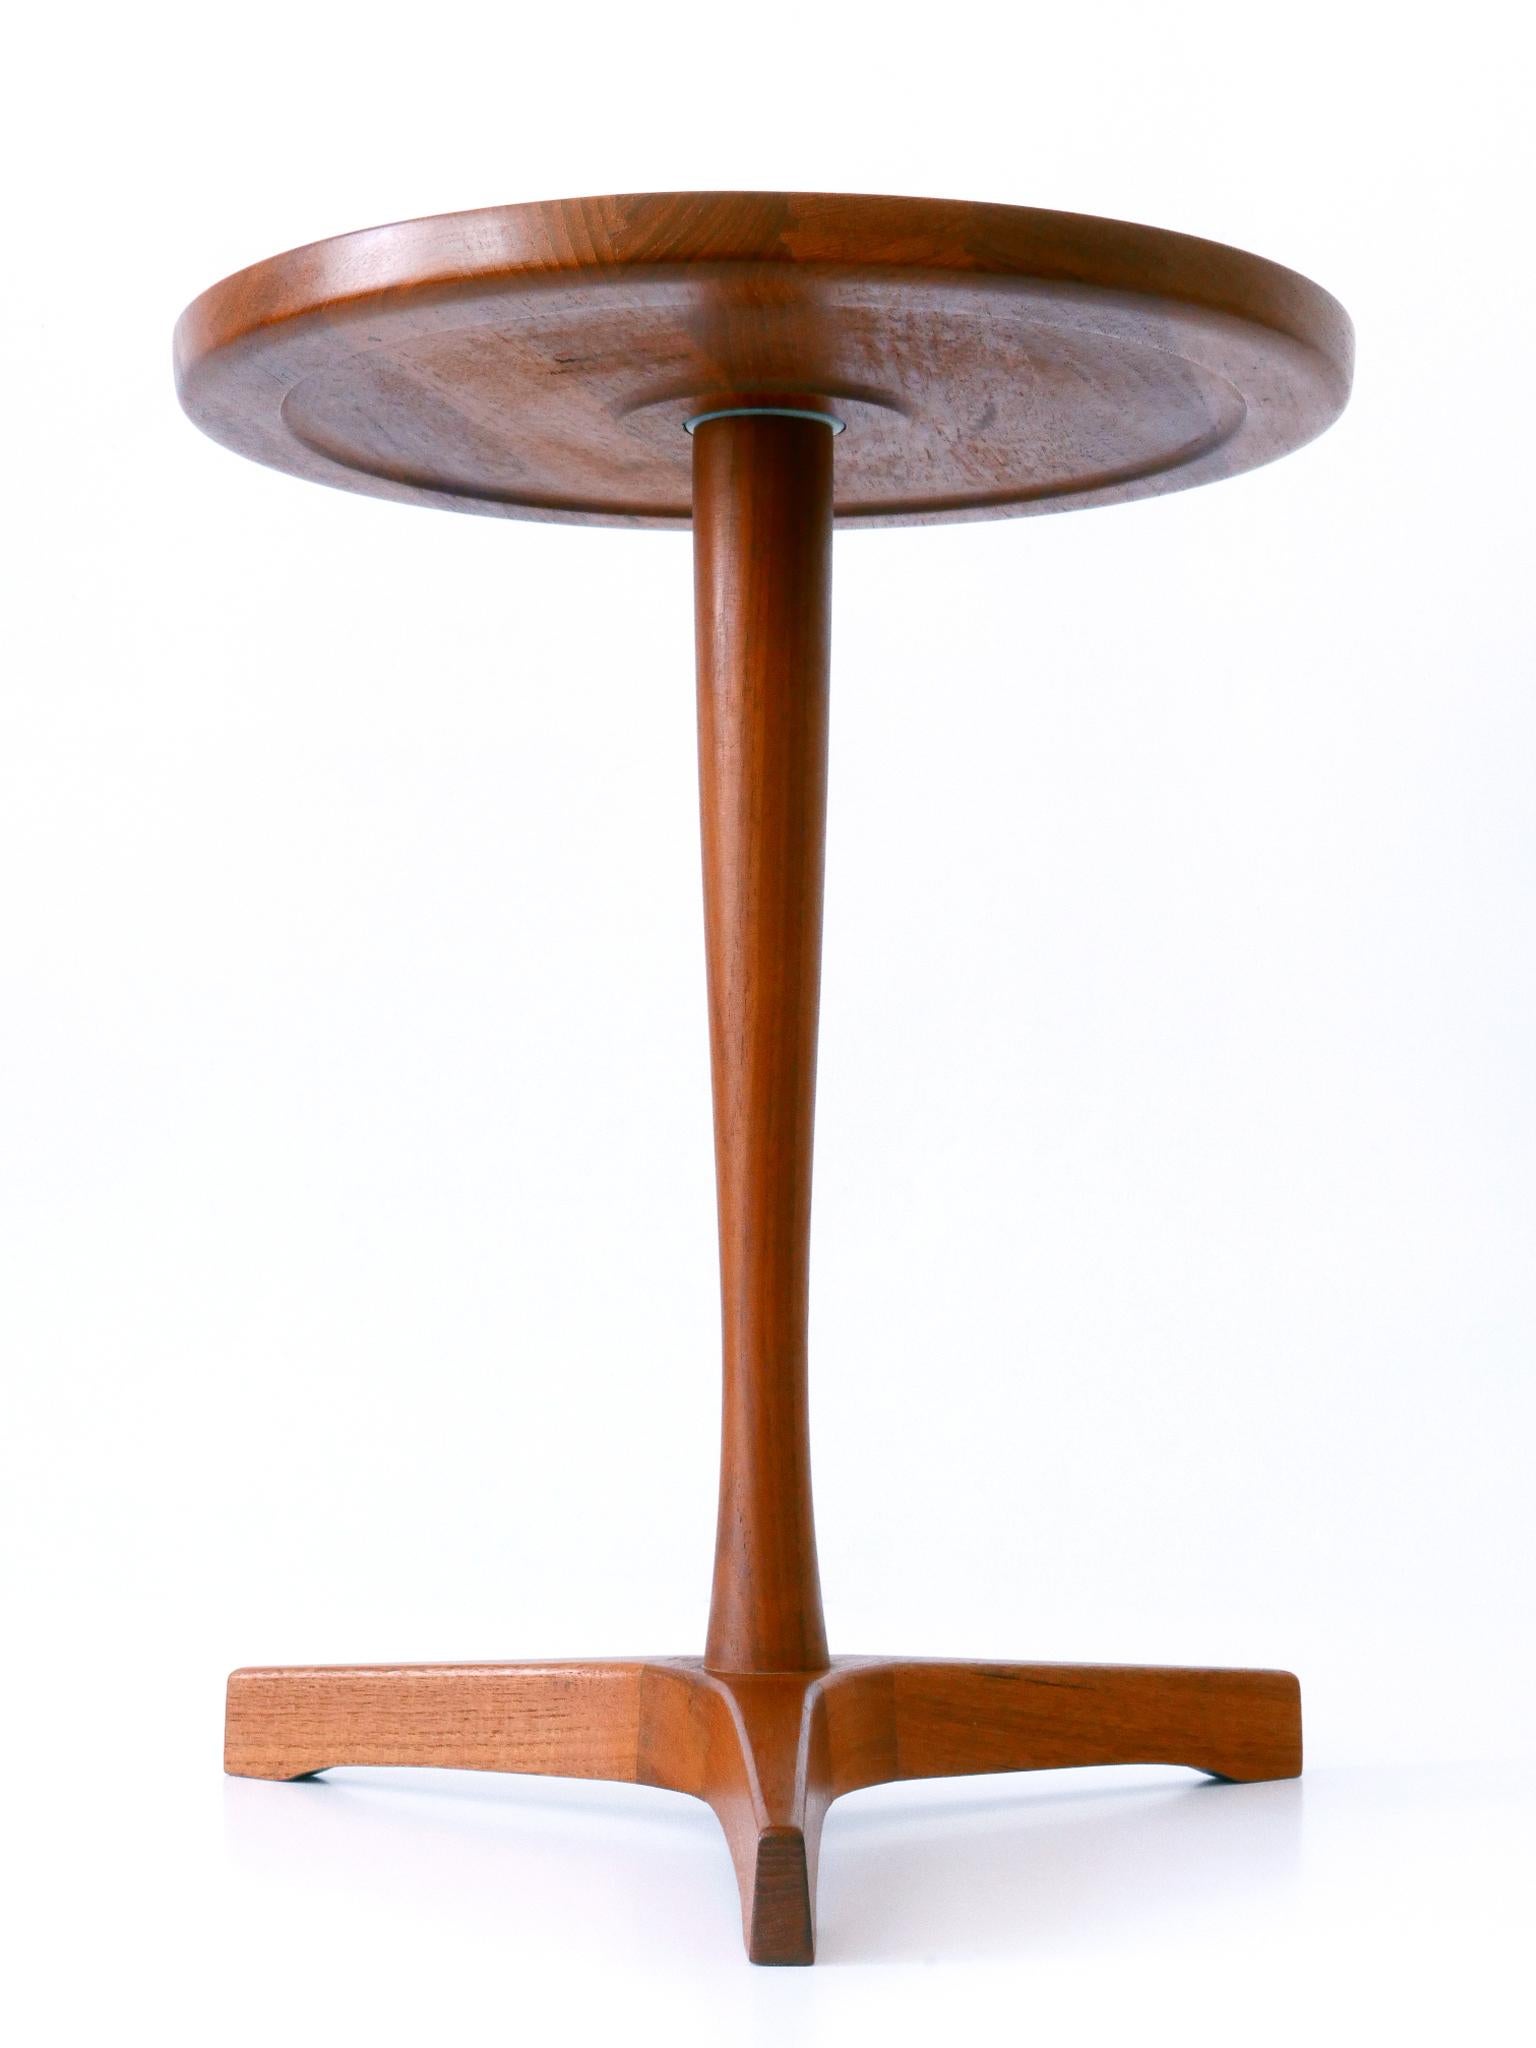 Elegant Mid-Century Modern Teak Side Table by Hans C. Andersen for Artek 1960s For Sale 1